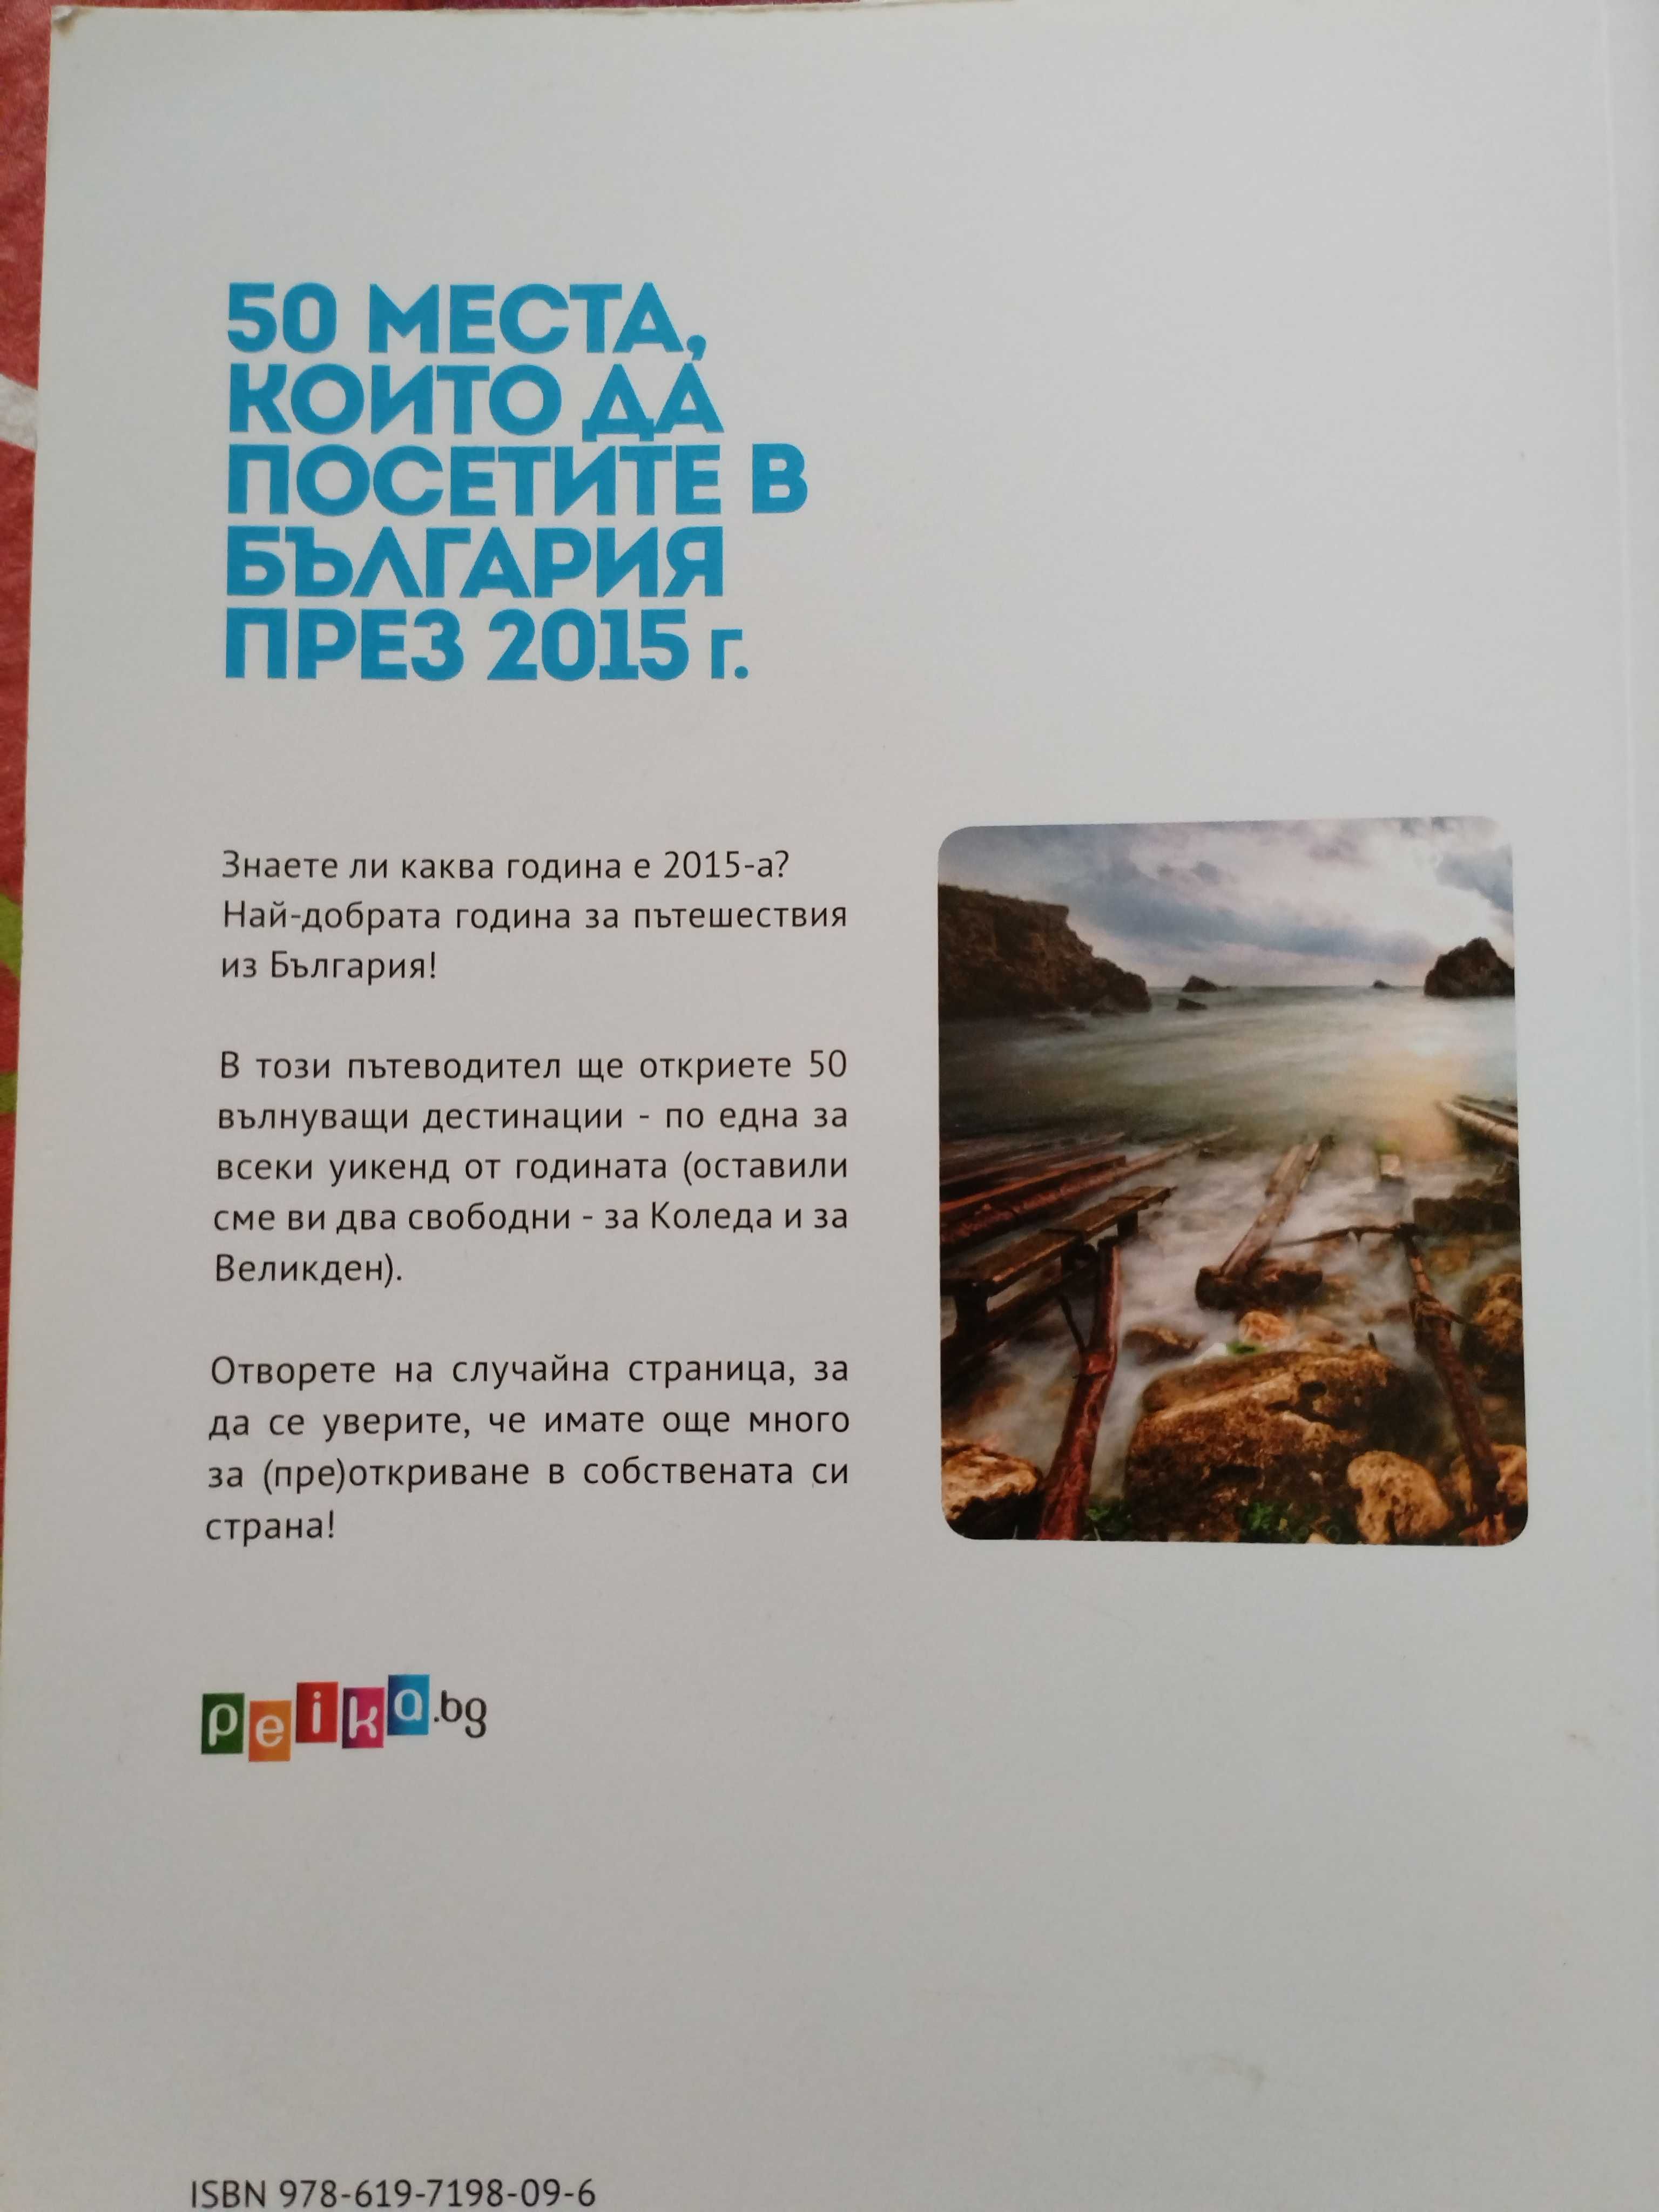 50 места които да посетите в България